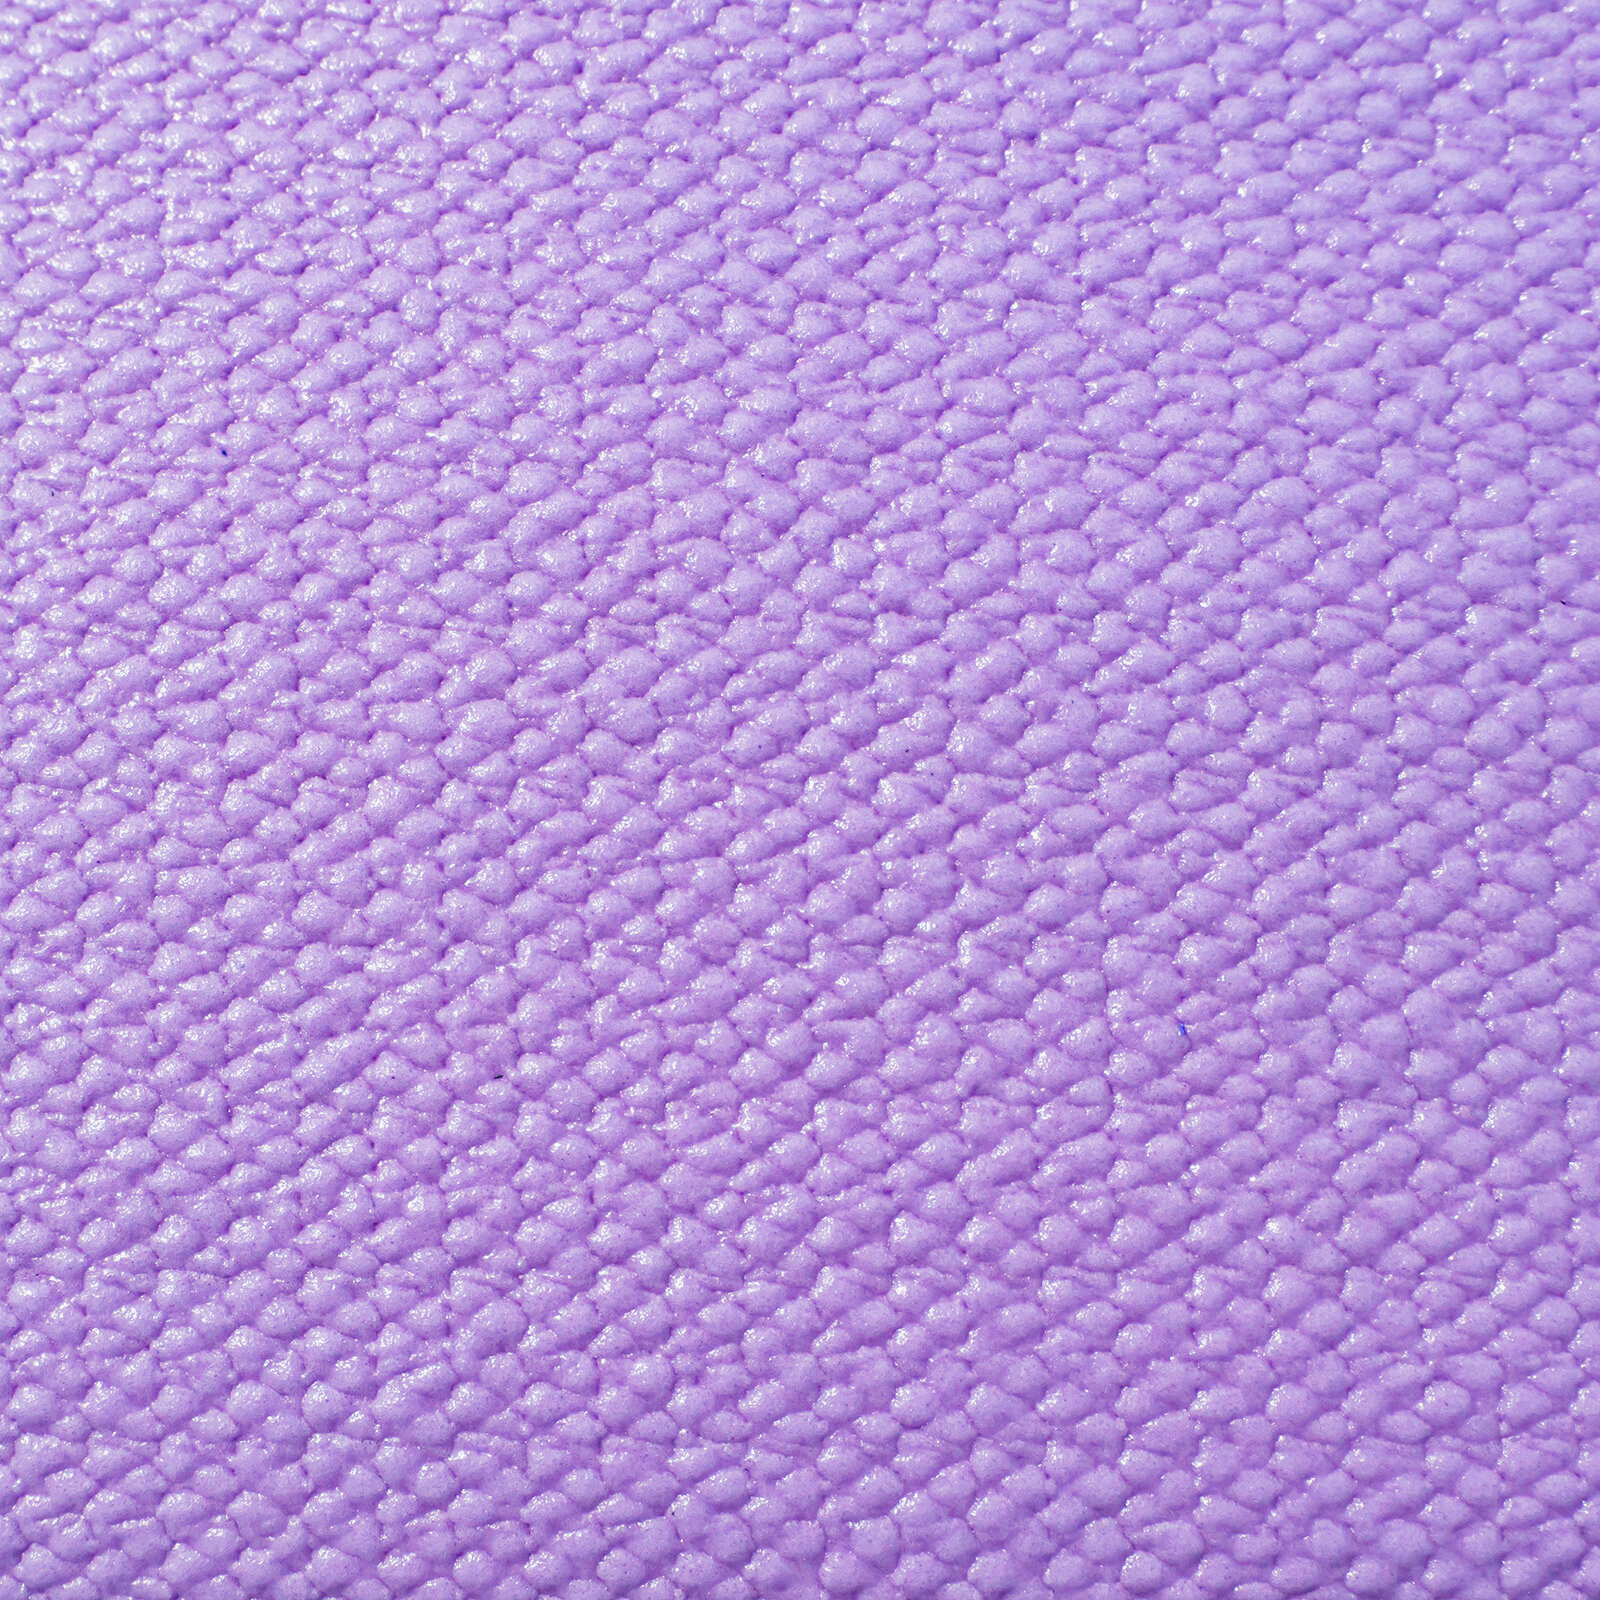 Подушка для ванны с присосками VILINA мягкая расслабляющая массажная подголовник 25х37 см "Спа" фиолетовая